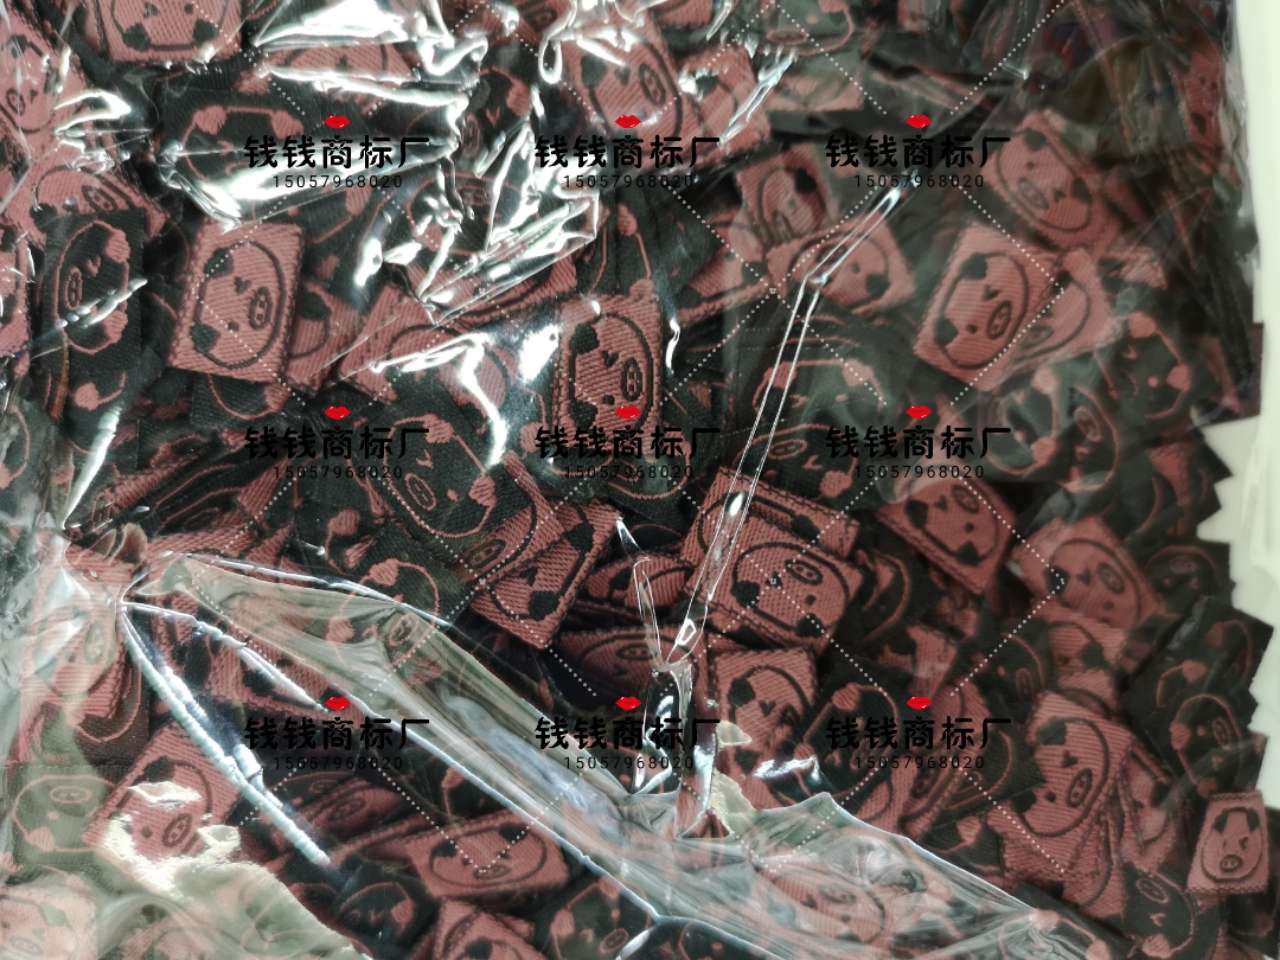 黑底粉色猪猪DIY 标签韩国韩版手工制作布标布贴商标织唛DIY发饰材料配件产品图